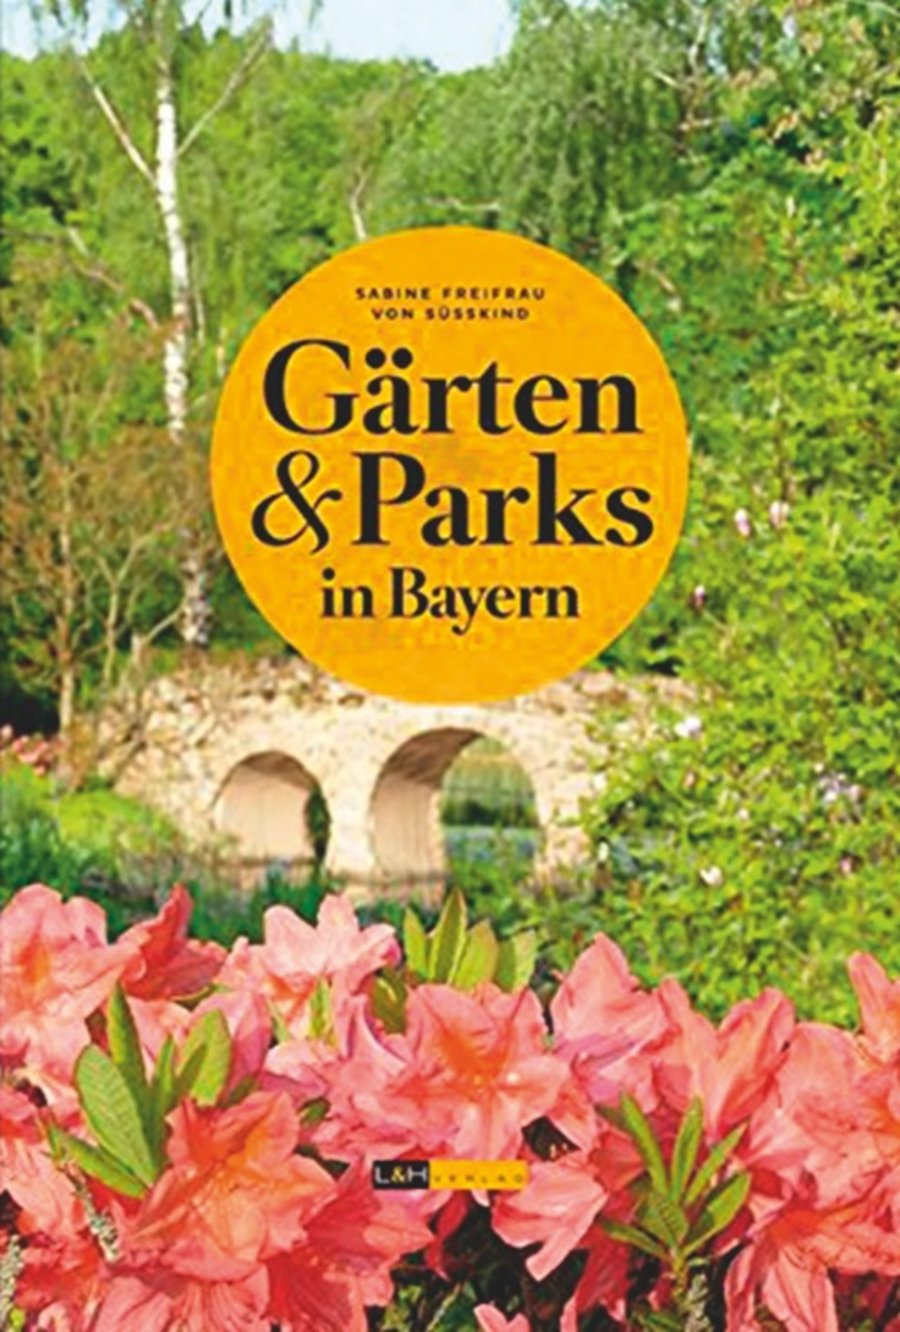 Bücher Gartengestaltung und Grünflächengestaltung